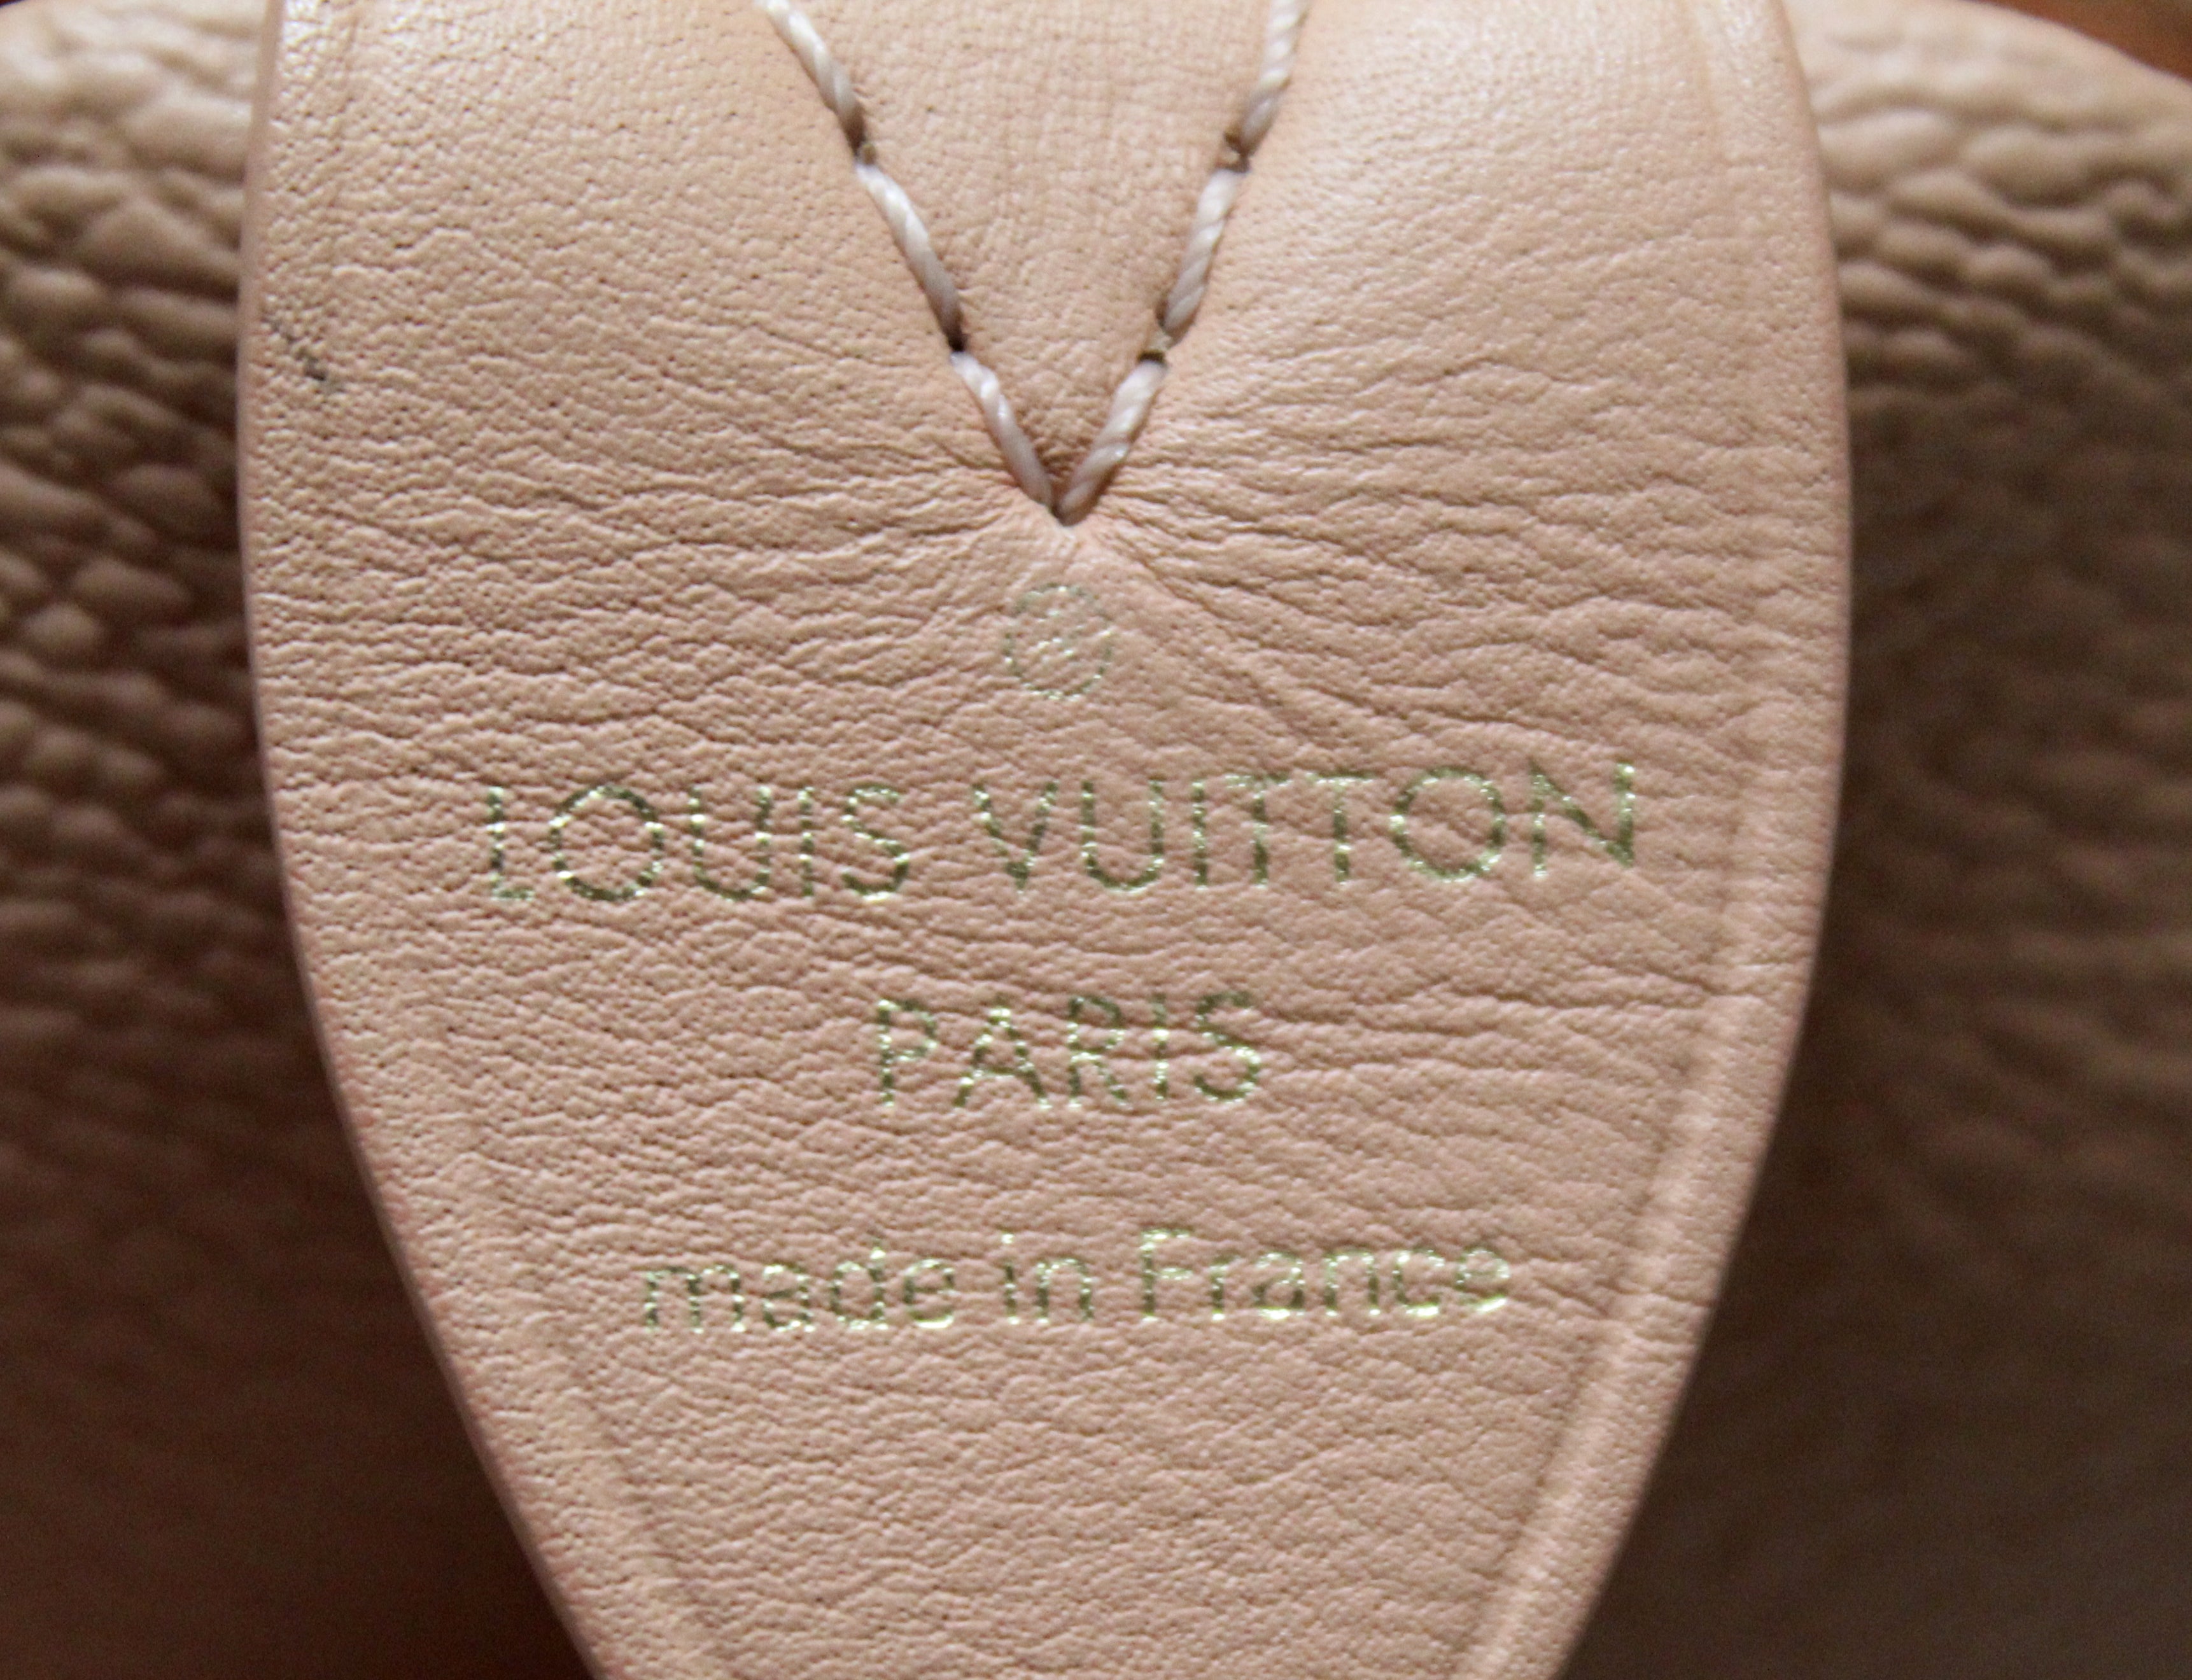 Louis Vuitton 2017 Speedy 30 Masters Collection Fragonard Handbag